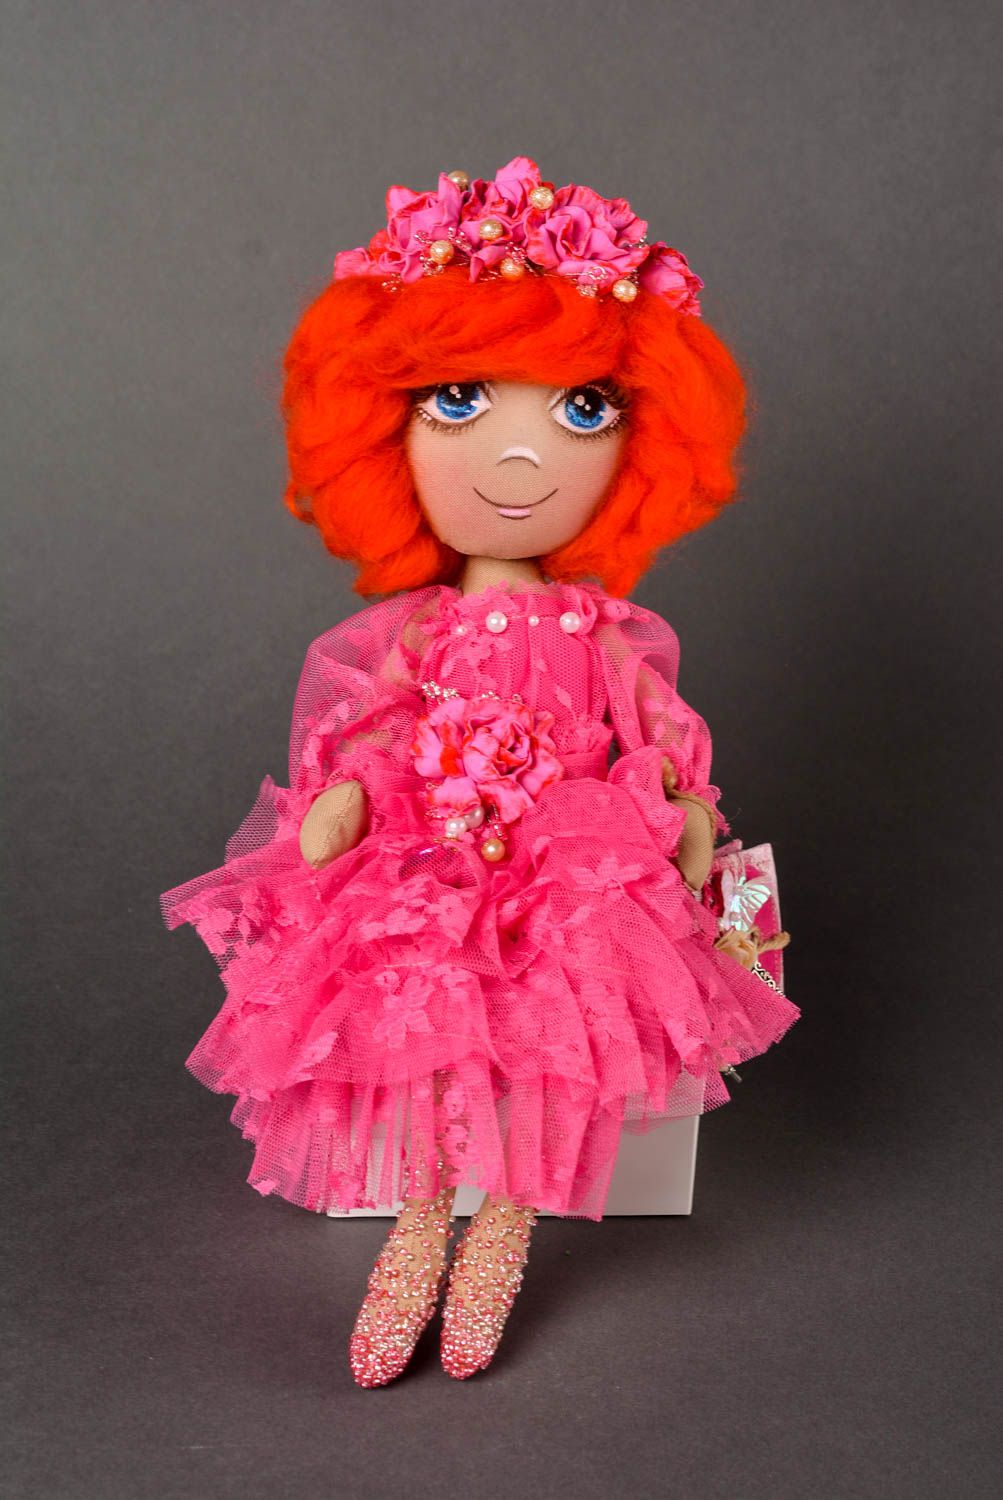 Кукла ручной работы кукла из ткани авторская мягкая кукла с рыжими волосами фото 1